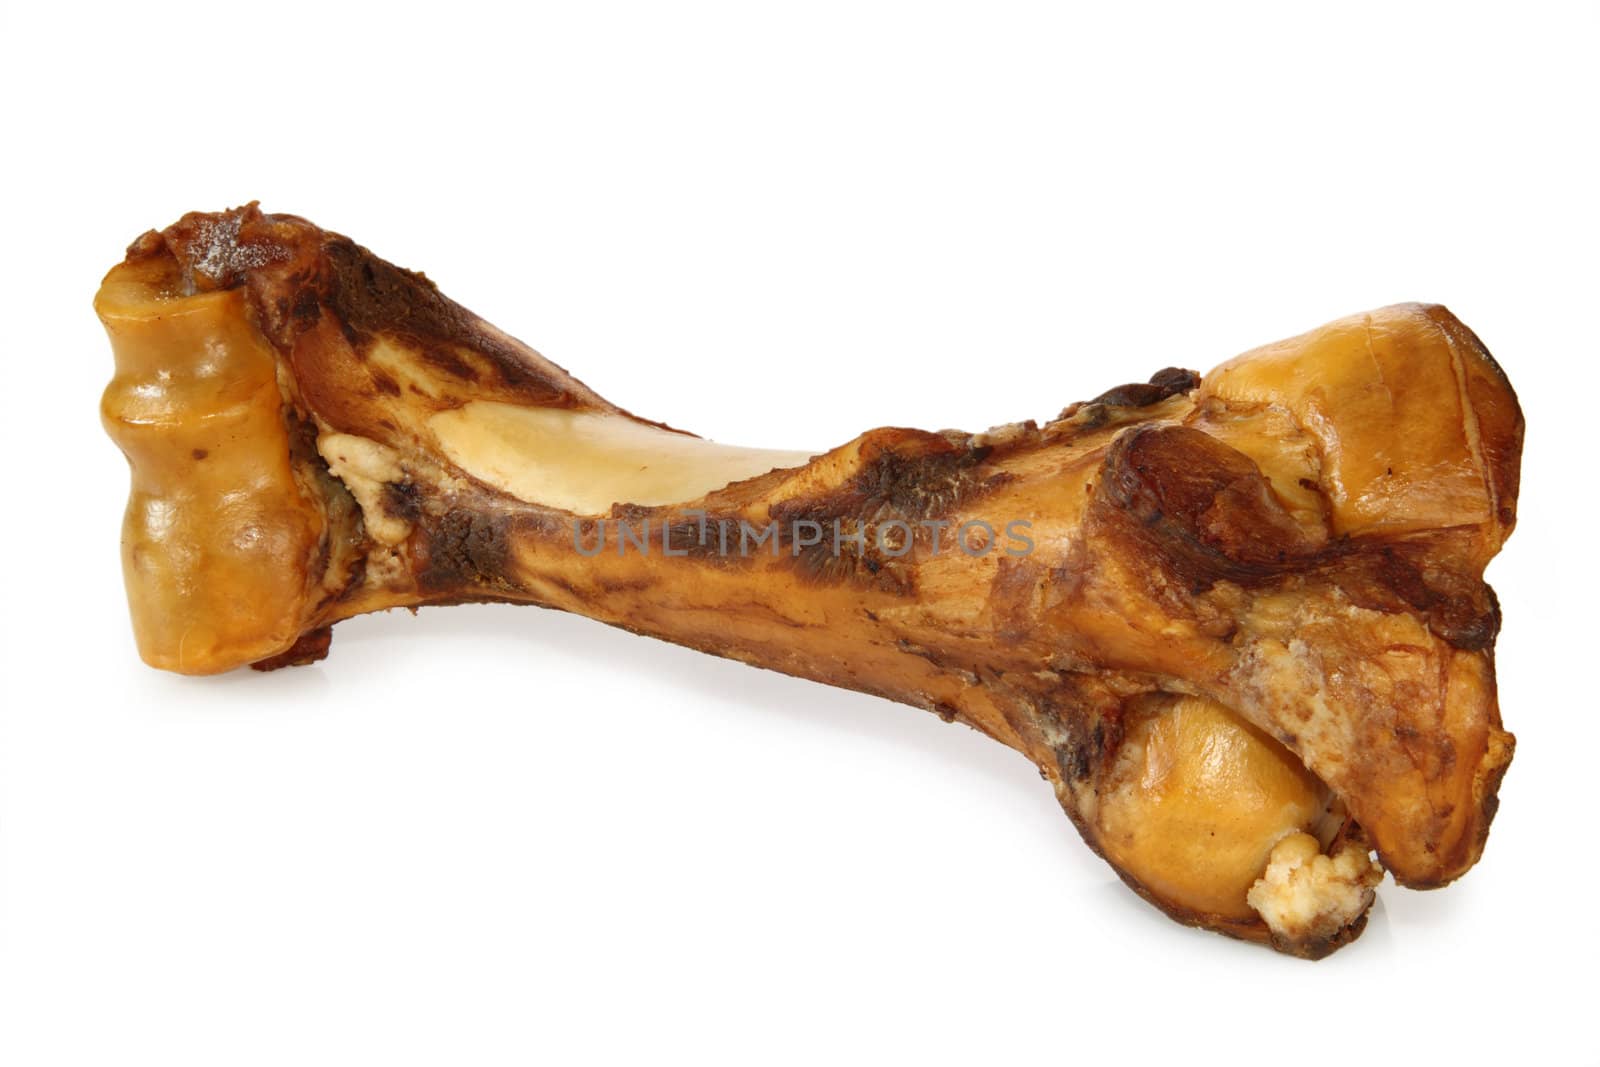 Smoked dog bone, isolated on a white background.